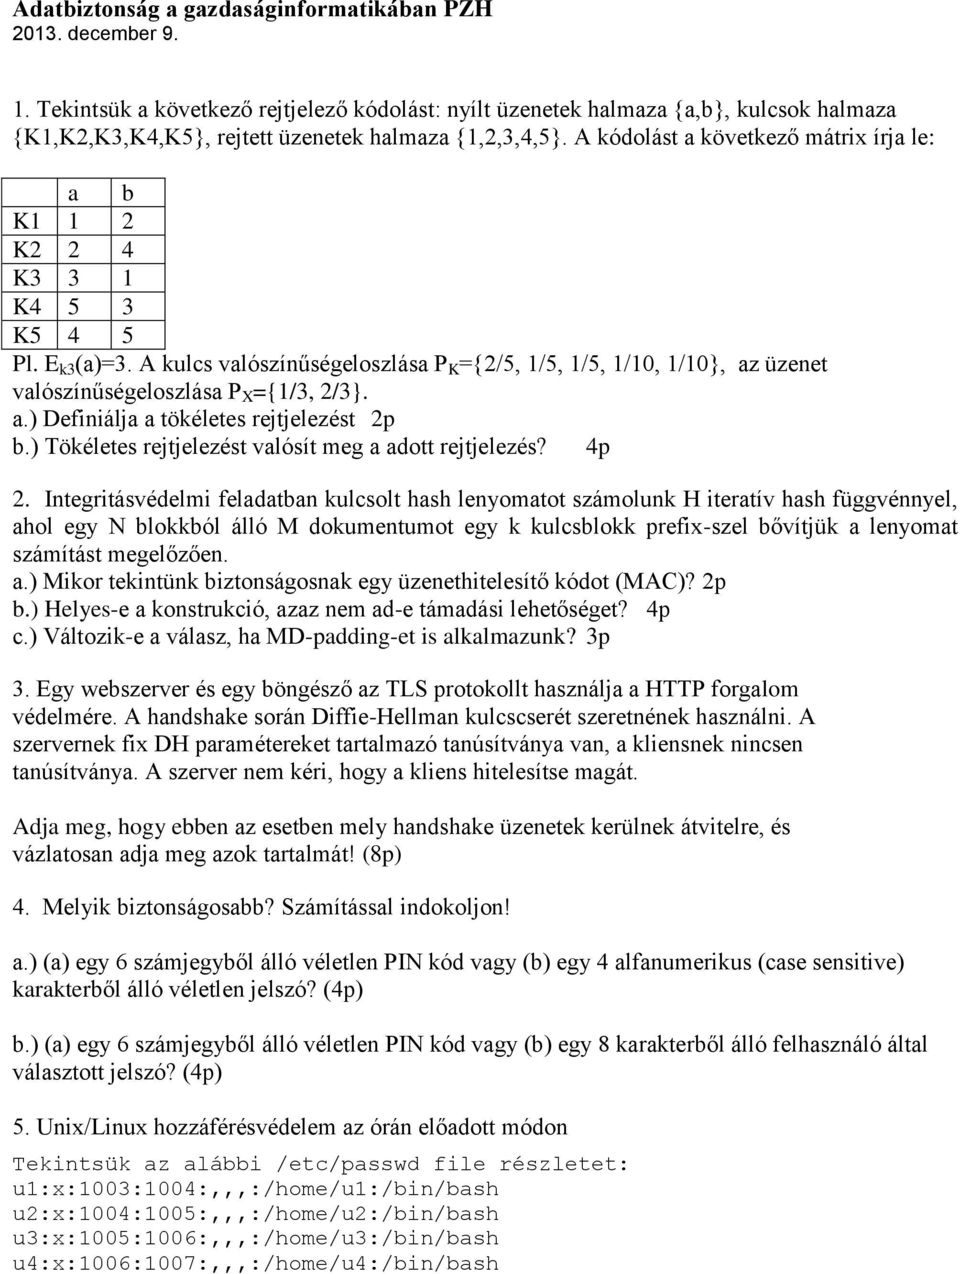 A kódolást a következő mátrix írja le: a b K1 1 2 K2 2 4 K3 3 1 K4 5 3 K5 4 5 Pl. E k3 (a)=3.